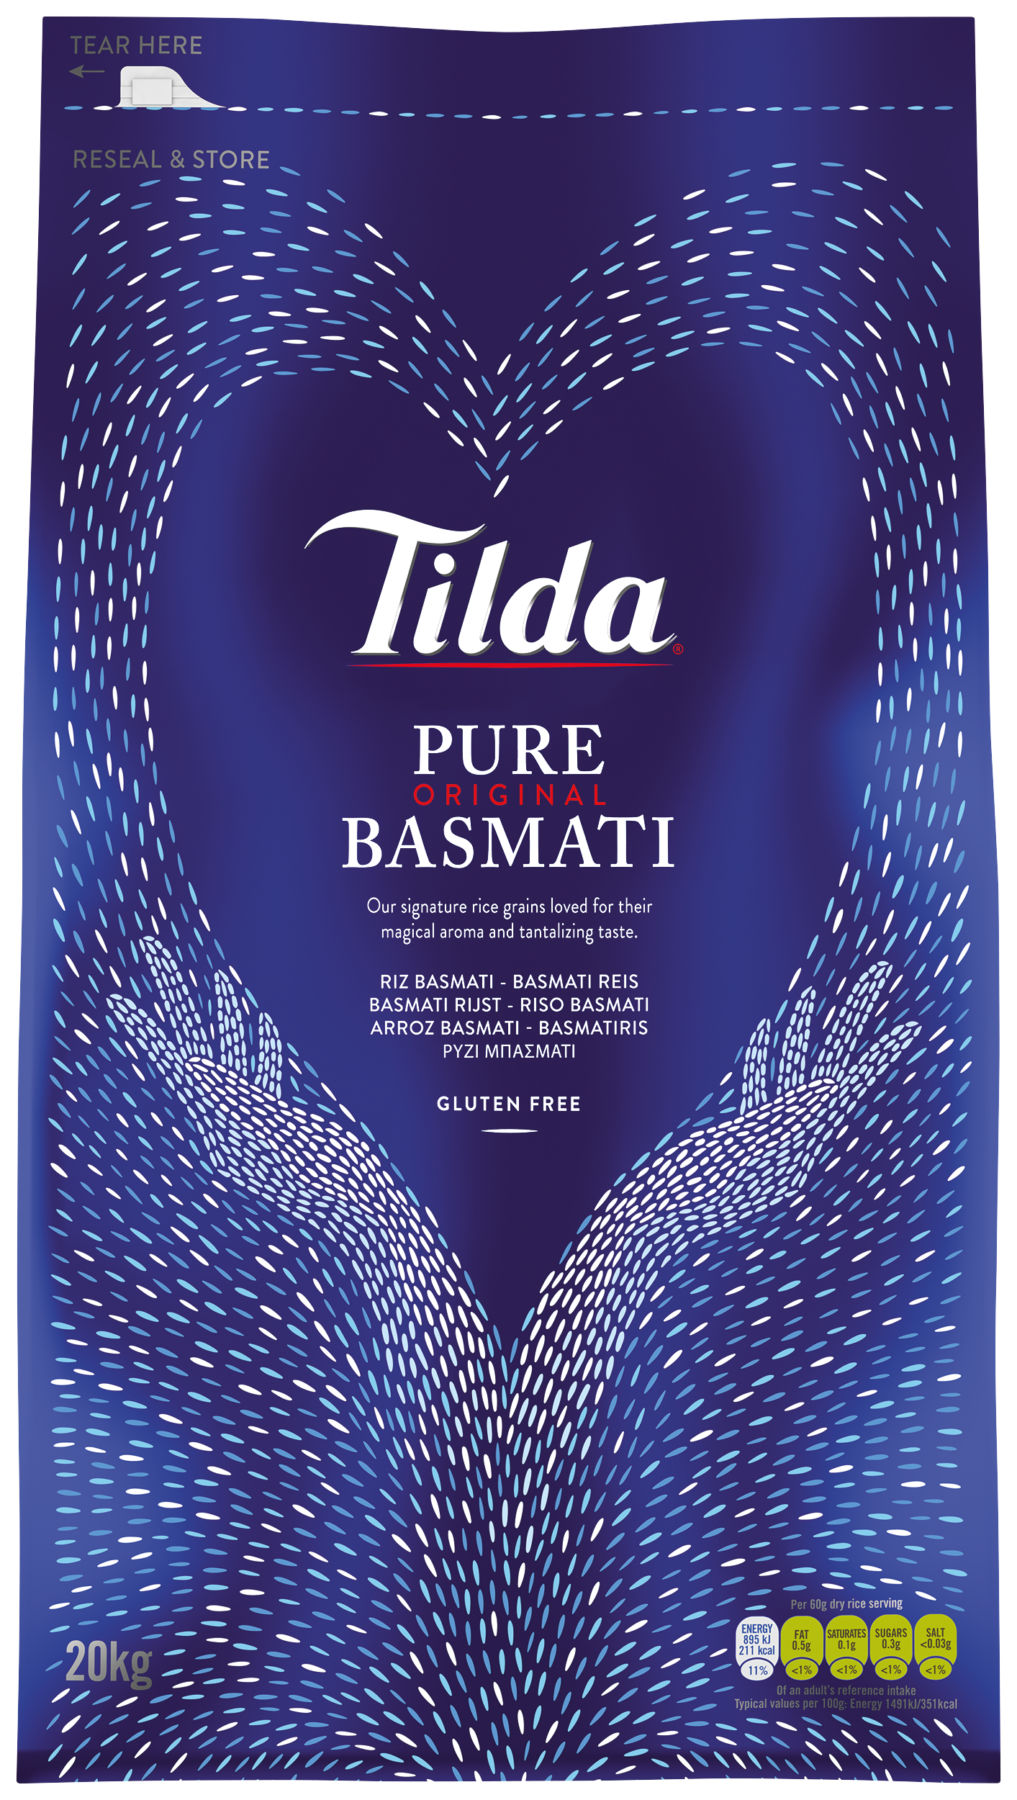 Tilda Pure Basmati Reis 20kg